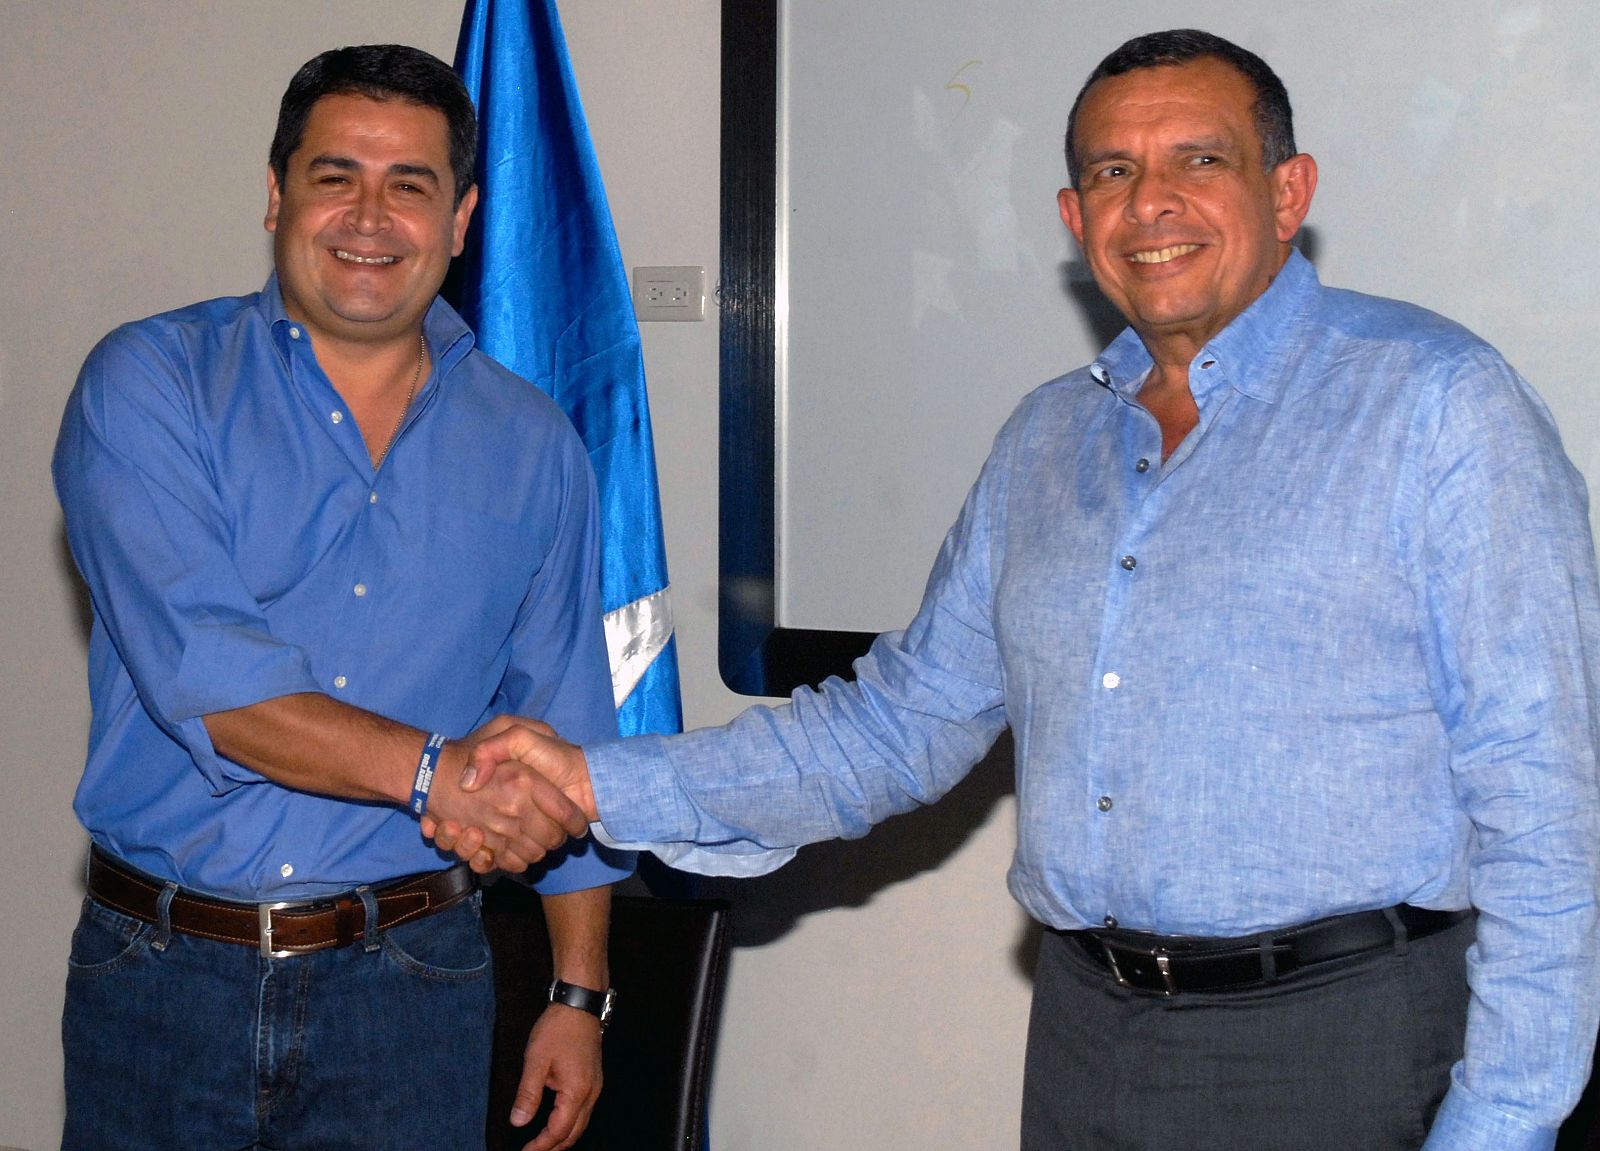 El PResidente de Honduras, Porfirio Lobo (derecha) estrecha su mano con el candidato presidencial del Partido Nacional, Juan Orlando Hernández, en Tegucigalpa